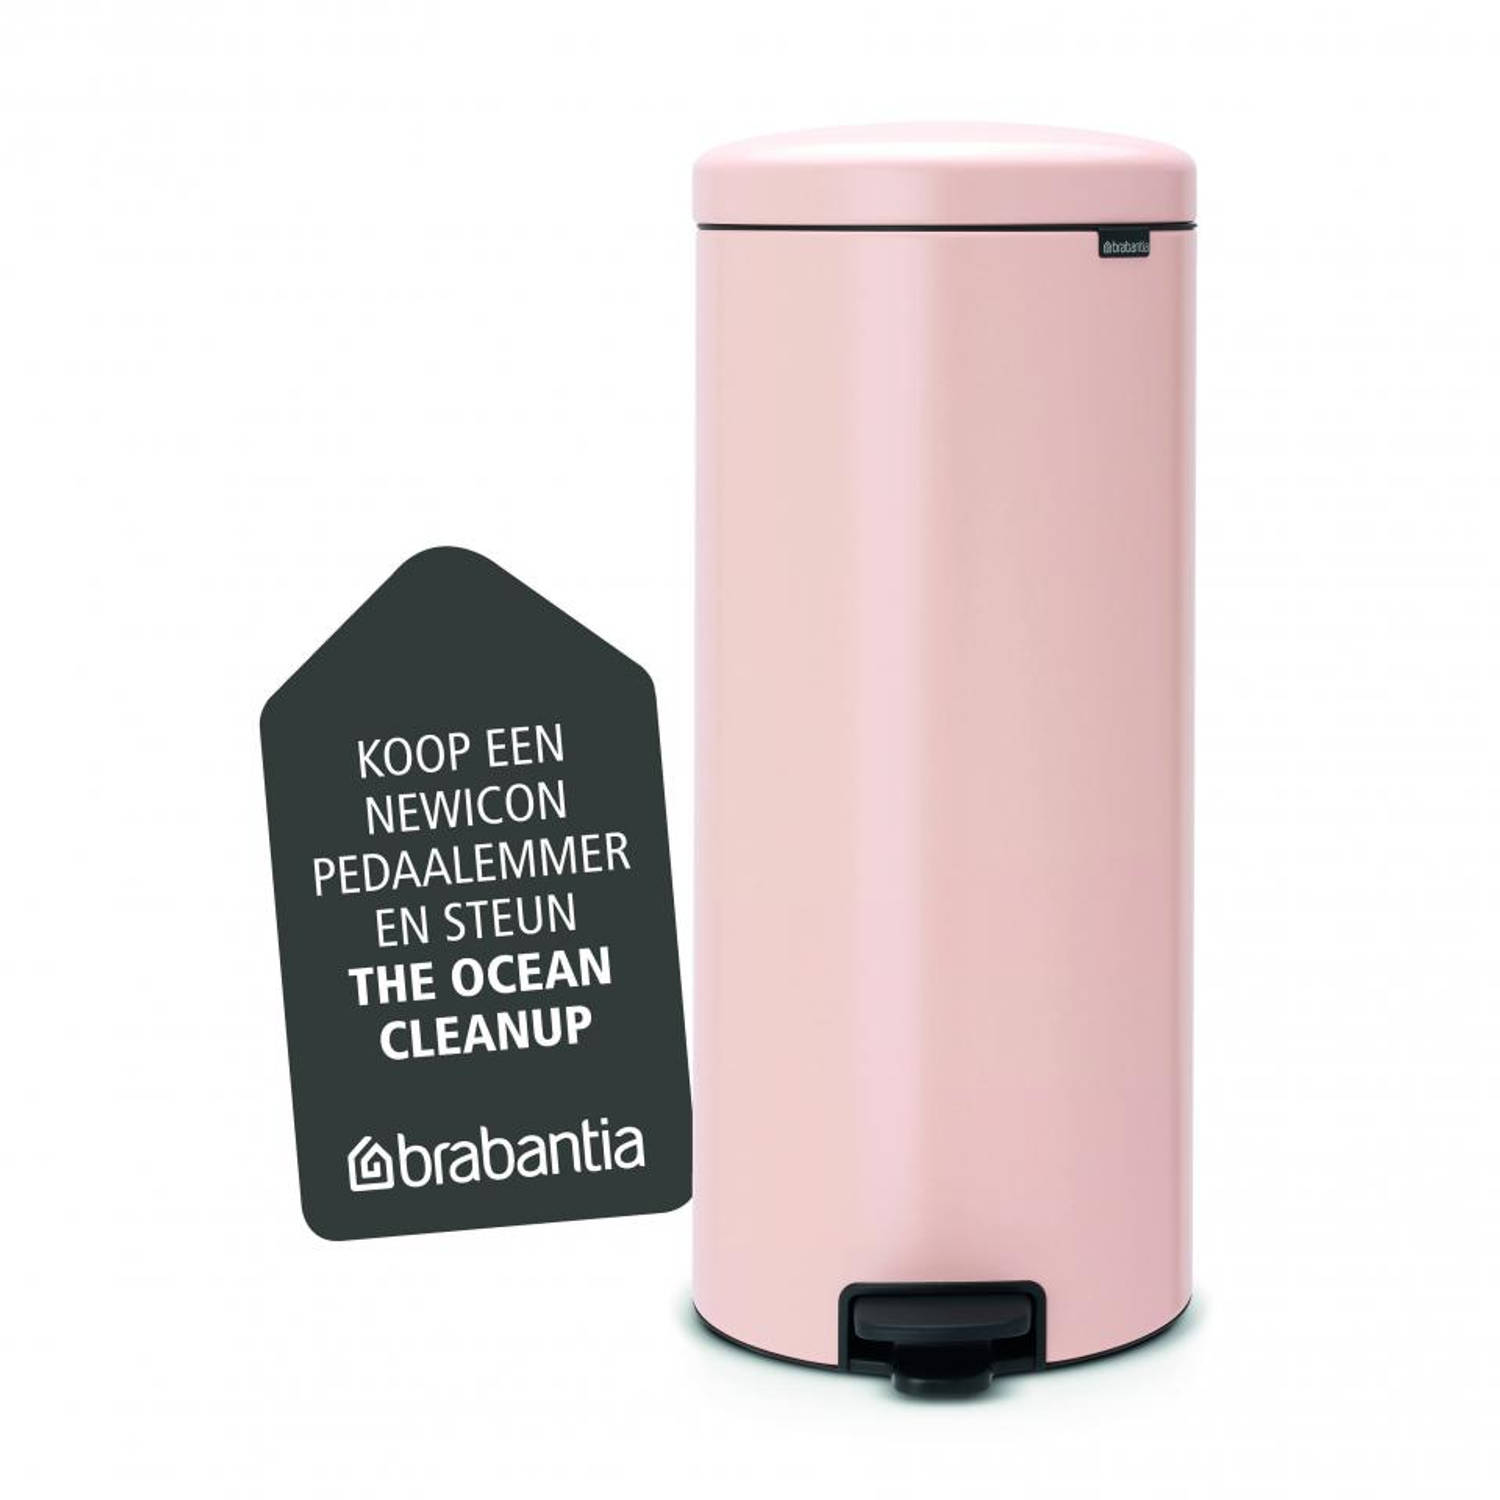 Kampioenschap Piraat Levering Brabantia newIcon prullenbak - 30 liter - roze | Blokker